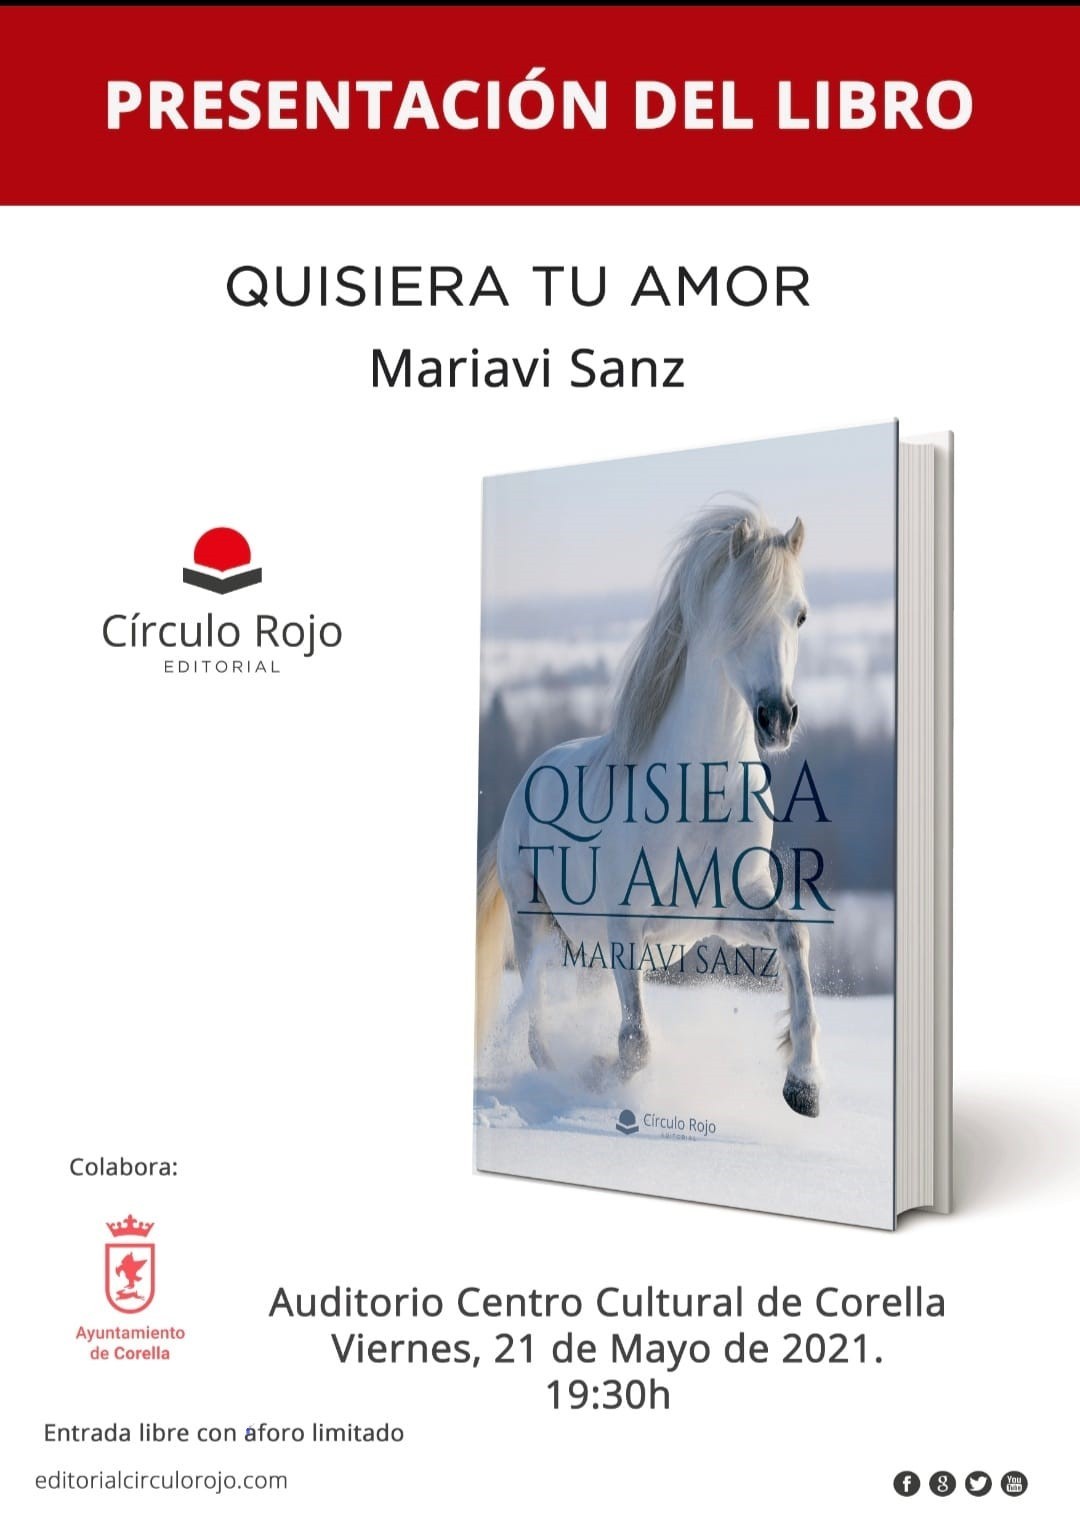 Presentación 'Quisiera tu amor' ultimo libro de Mariavi Sanz en Corella